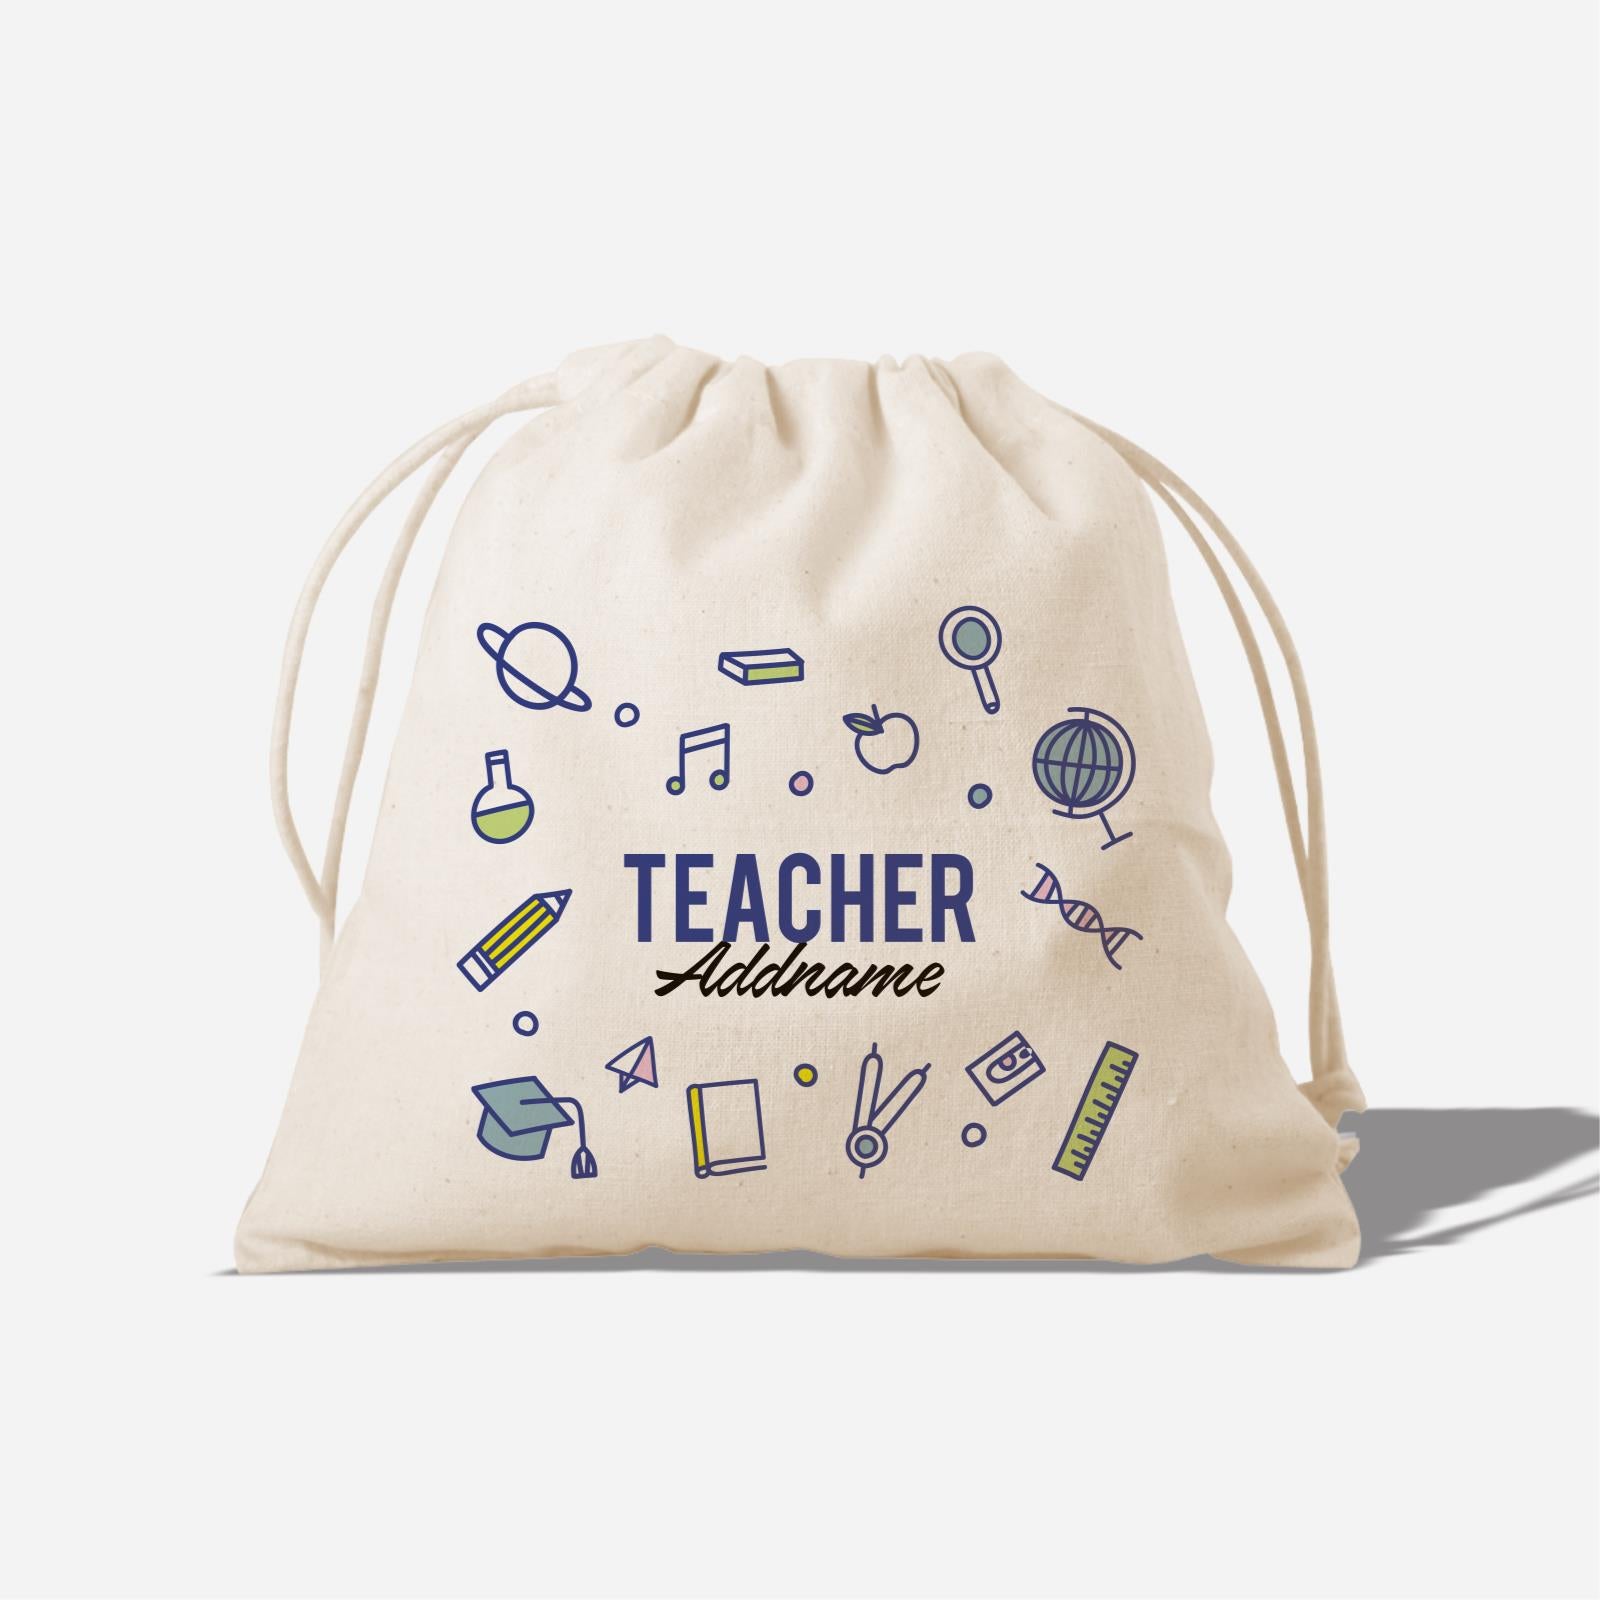 Teacher Title Teacher - Satchel